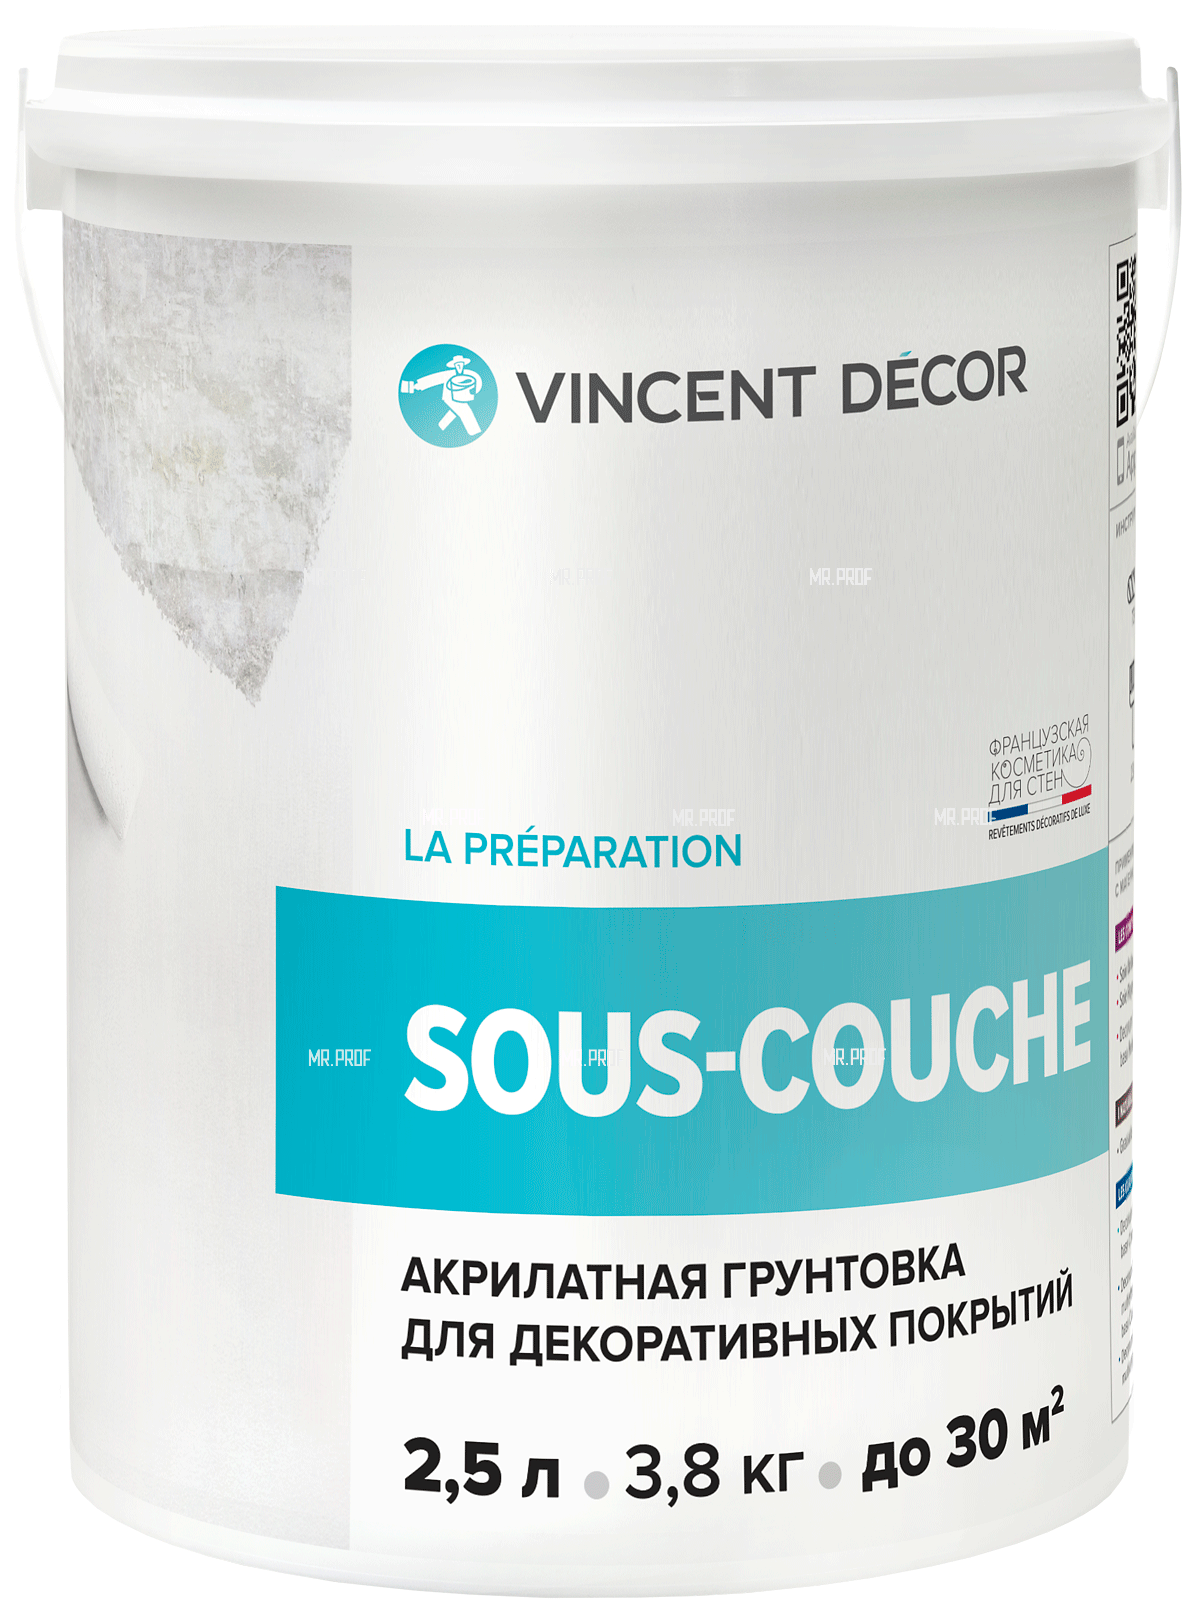 Грунтовка Vincent Decor Sous-couche 4,5 л